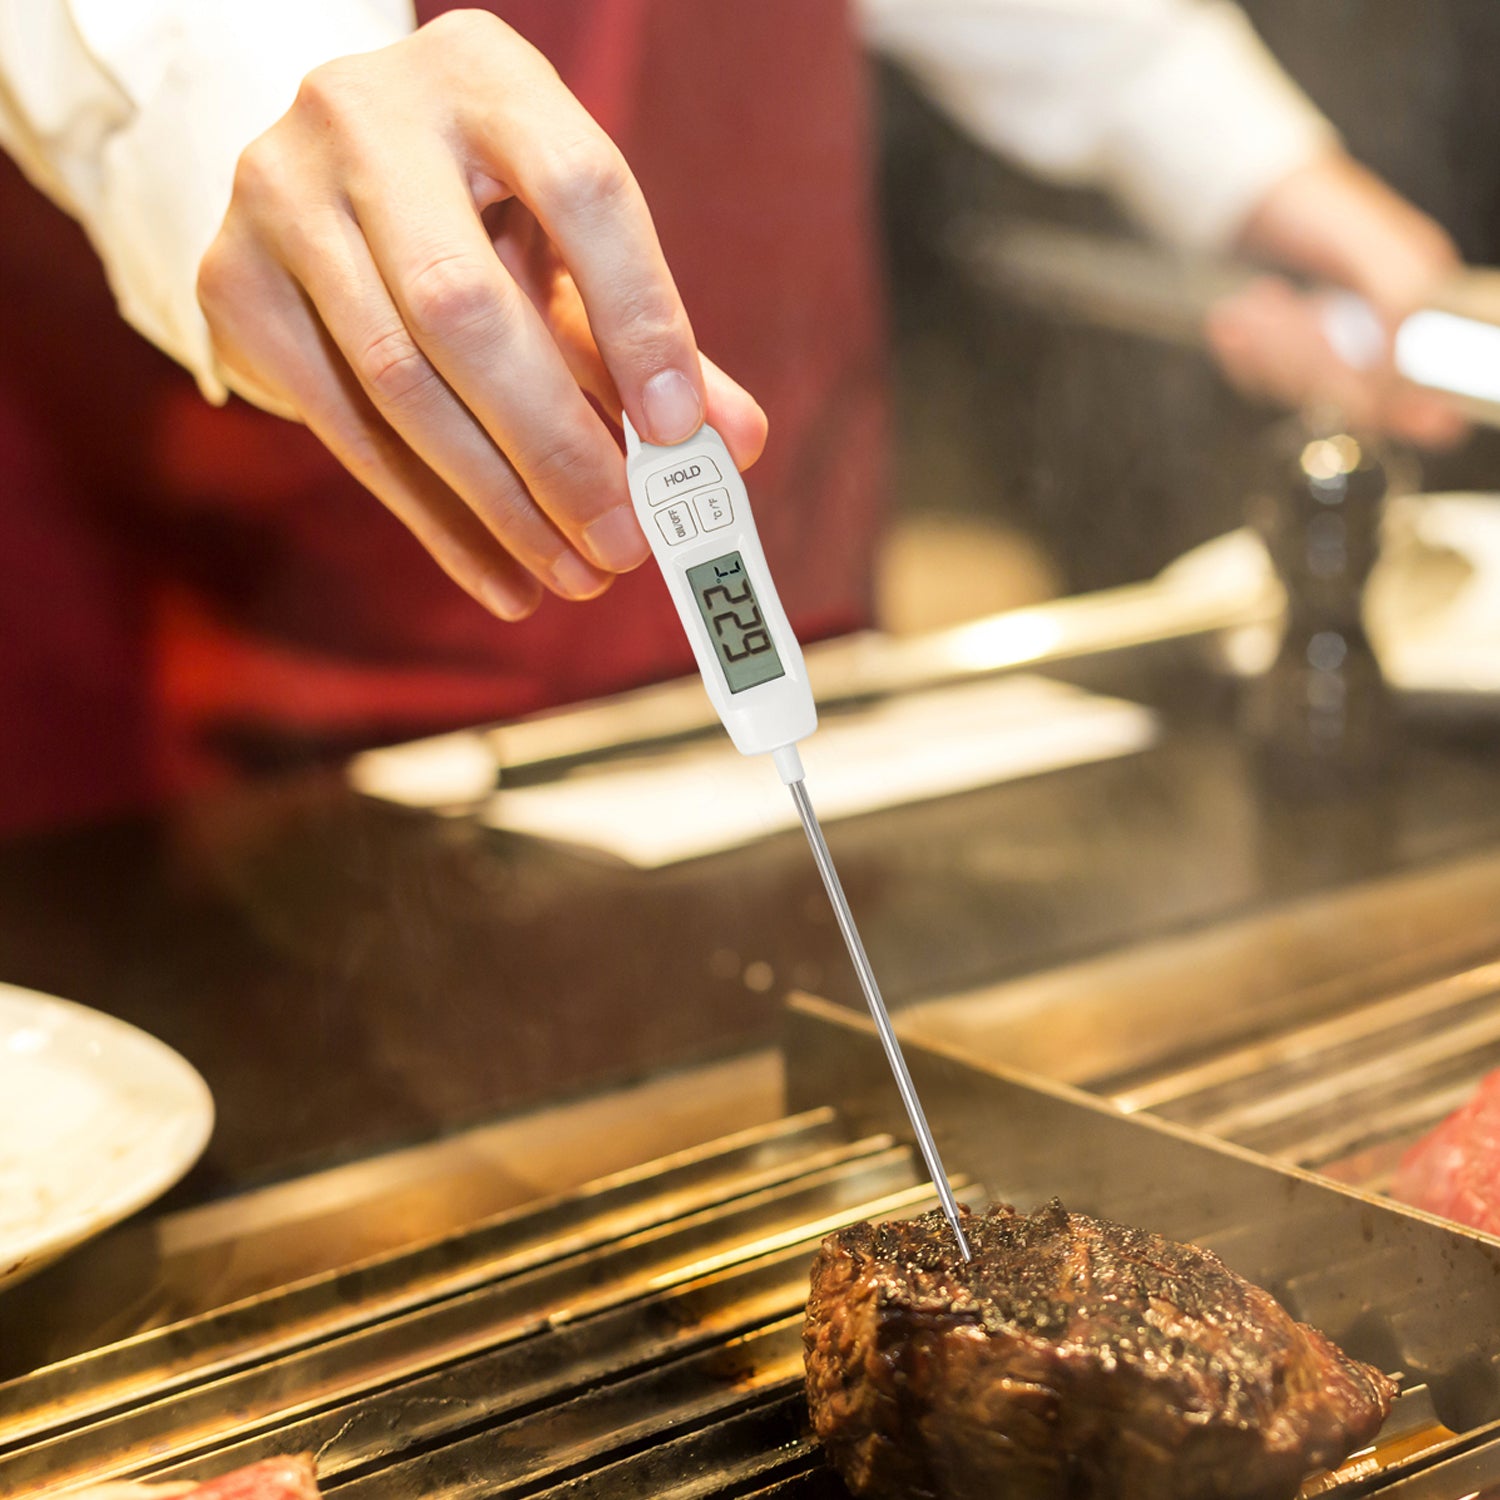 Termómetro Digital de Cocina para Carne o Reposteria Elly Decor